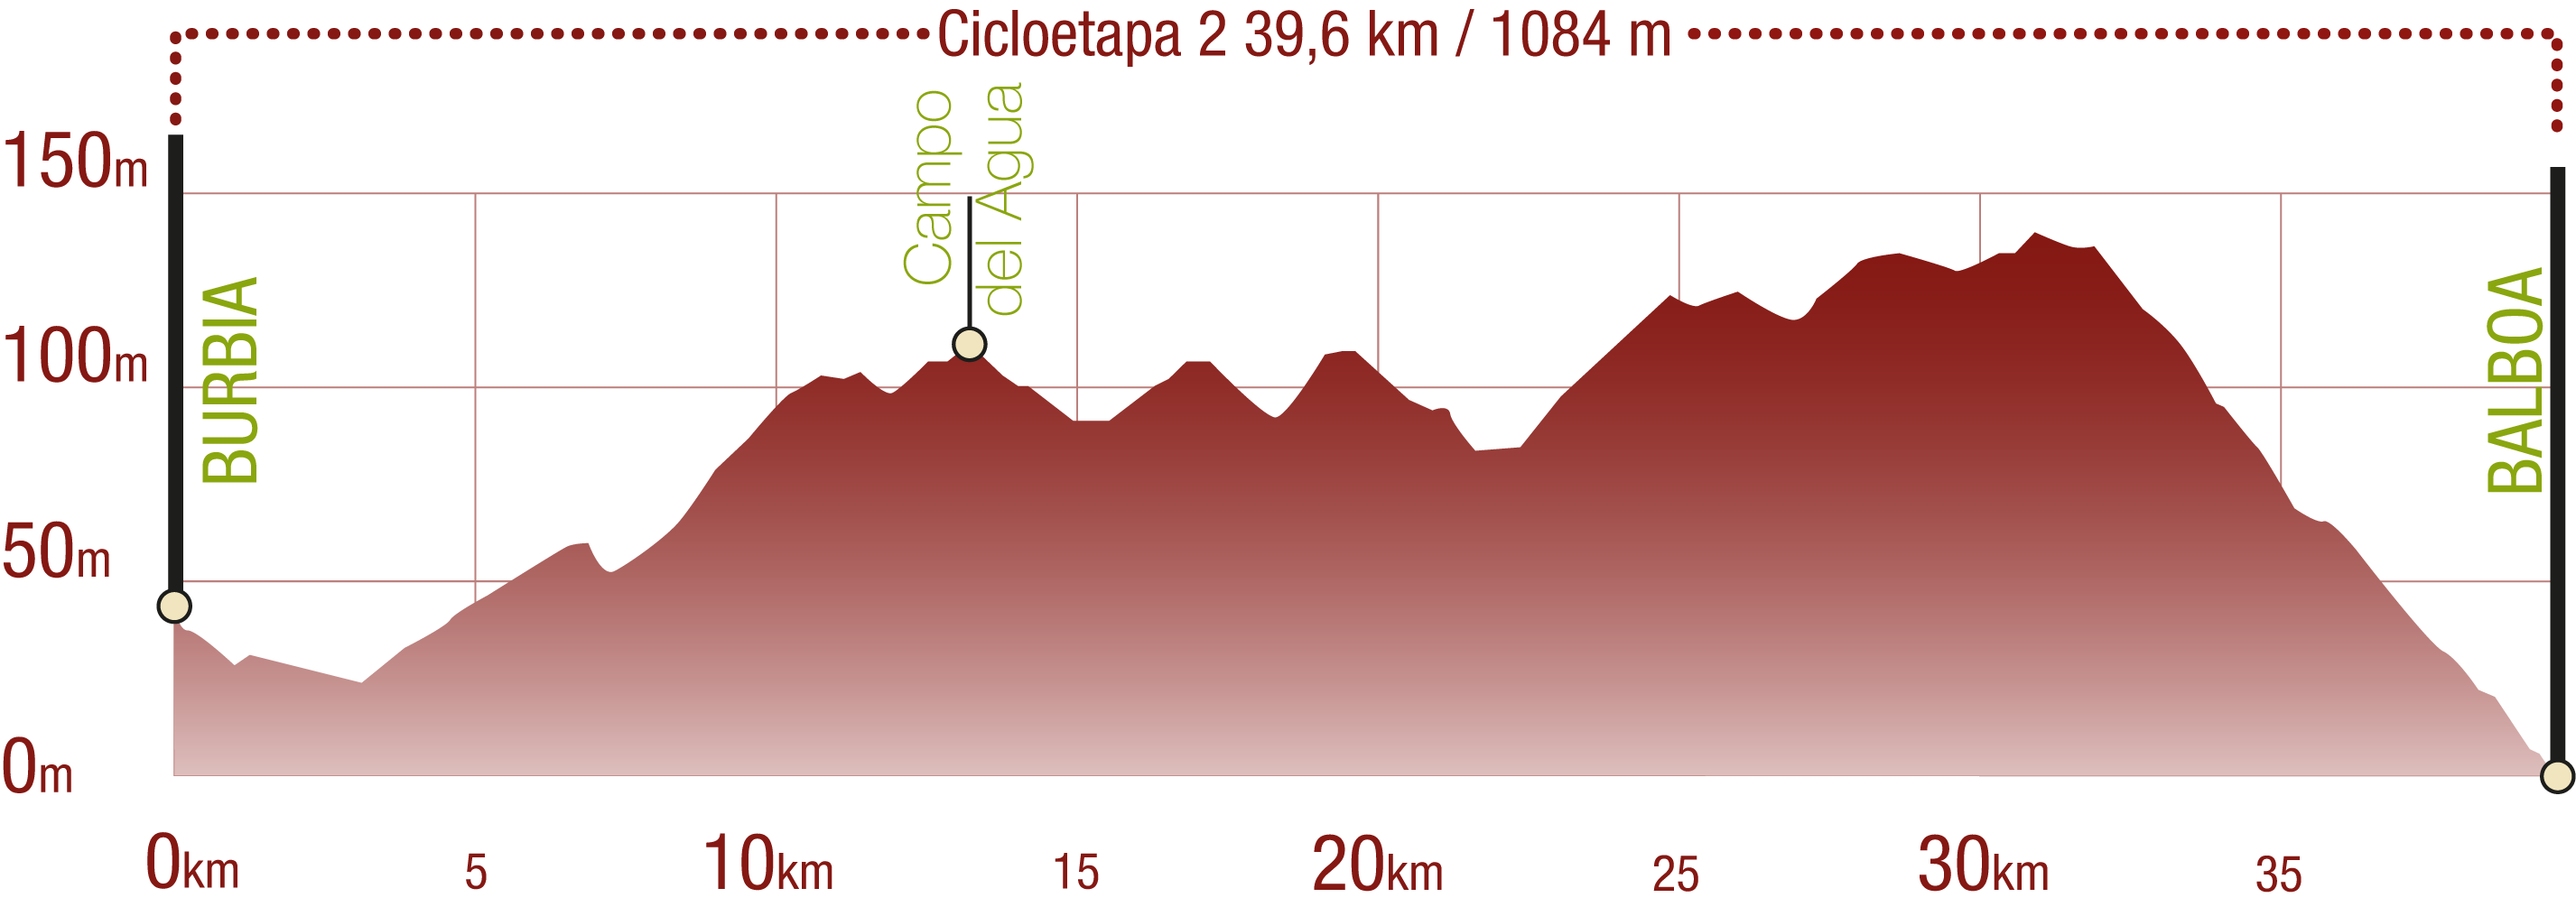 Perfil 
Perfil del recorrido de la cicloetapa 2 del CN La Mirada Circular. Ancares leoneses de Guimará a Balboa: 39,60 km / Desnivel de subida 1084 m

